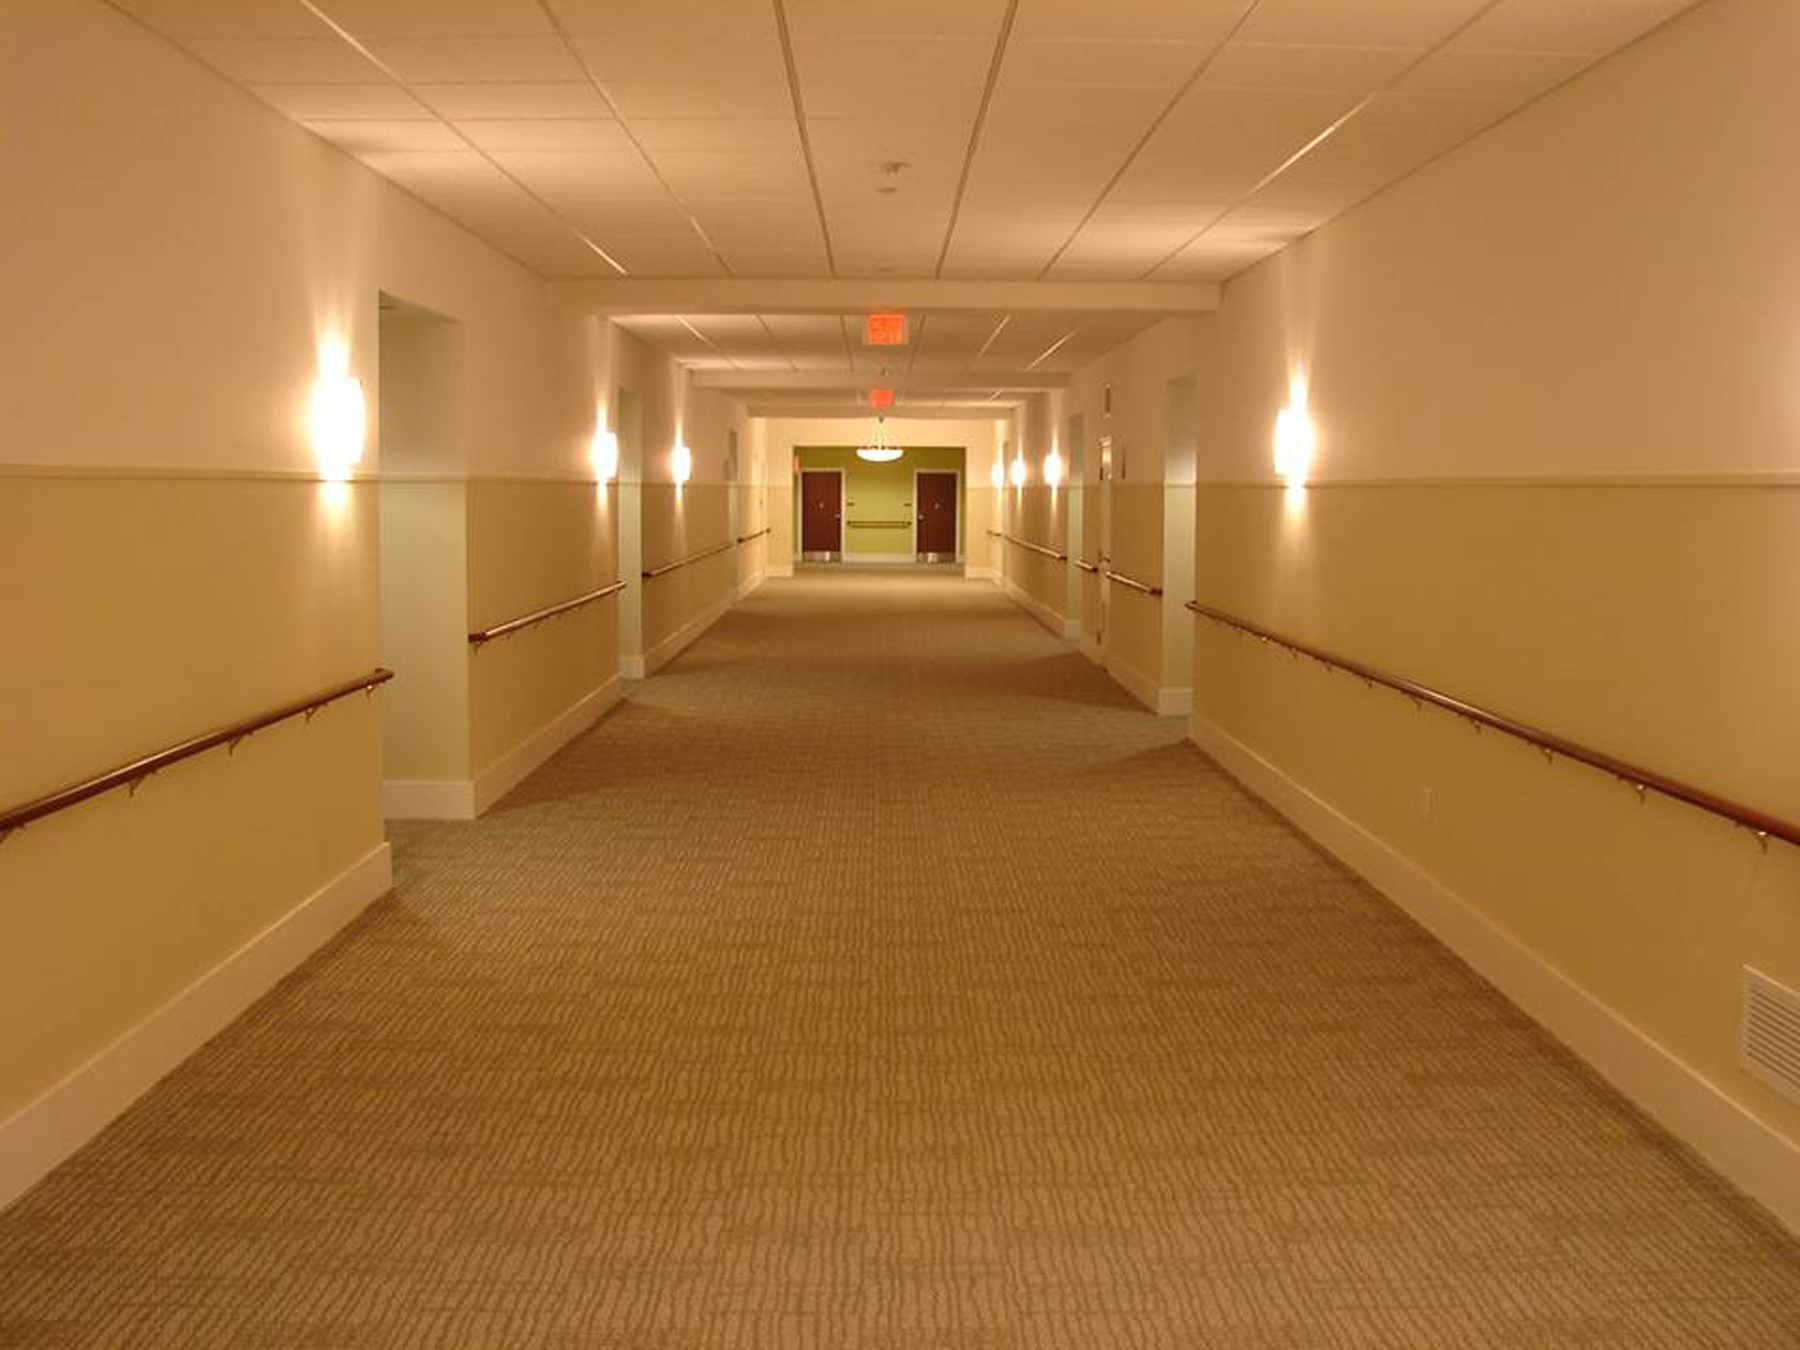 Corridor After